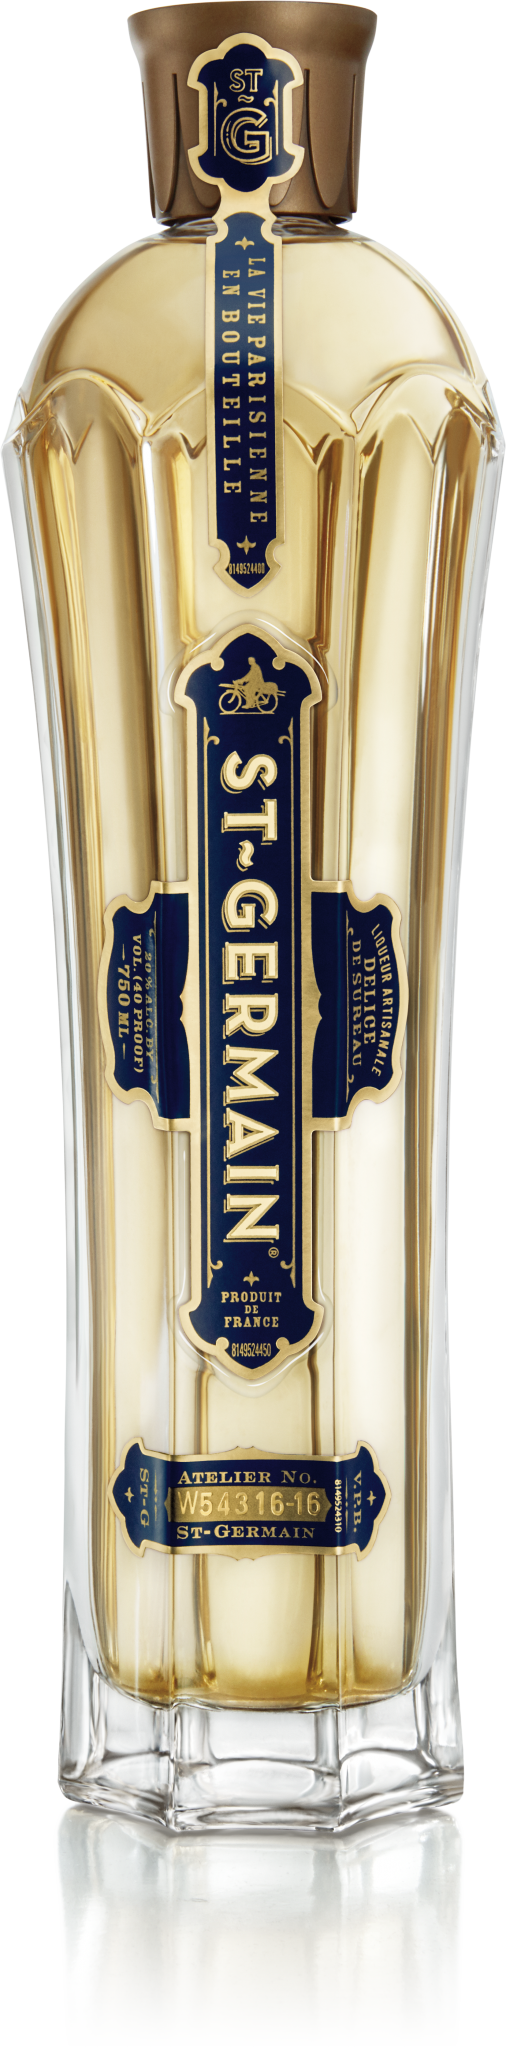 St Germain Elderflower Liqueur 375ml